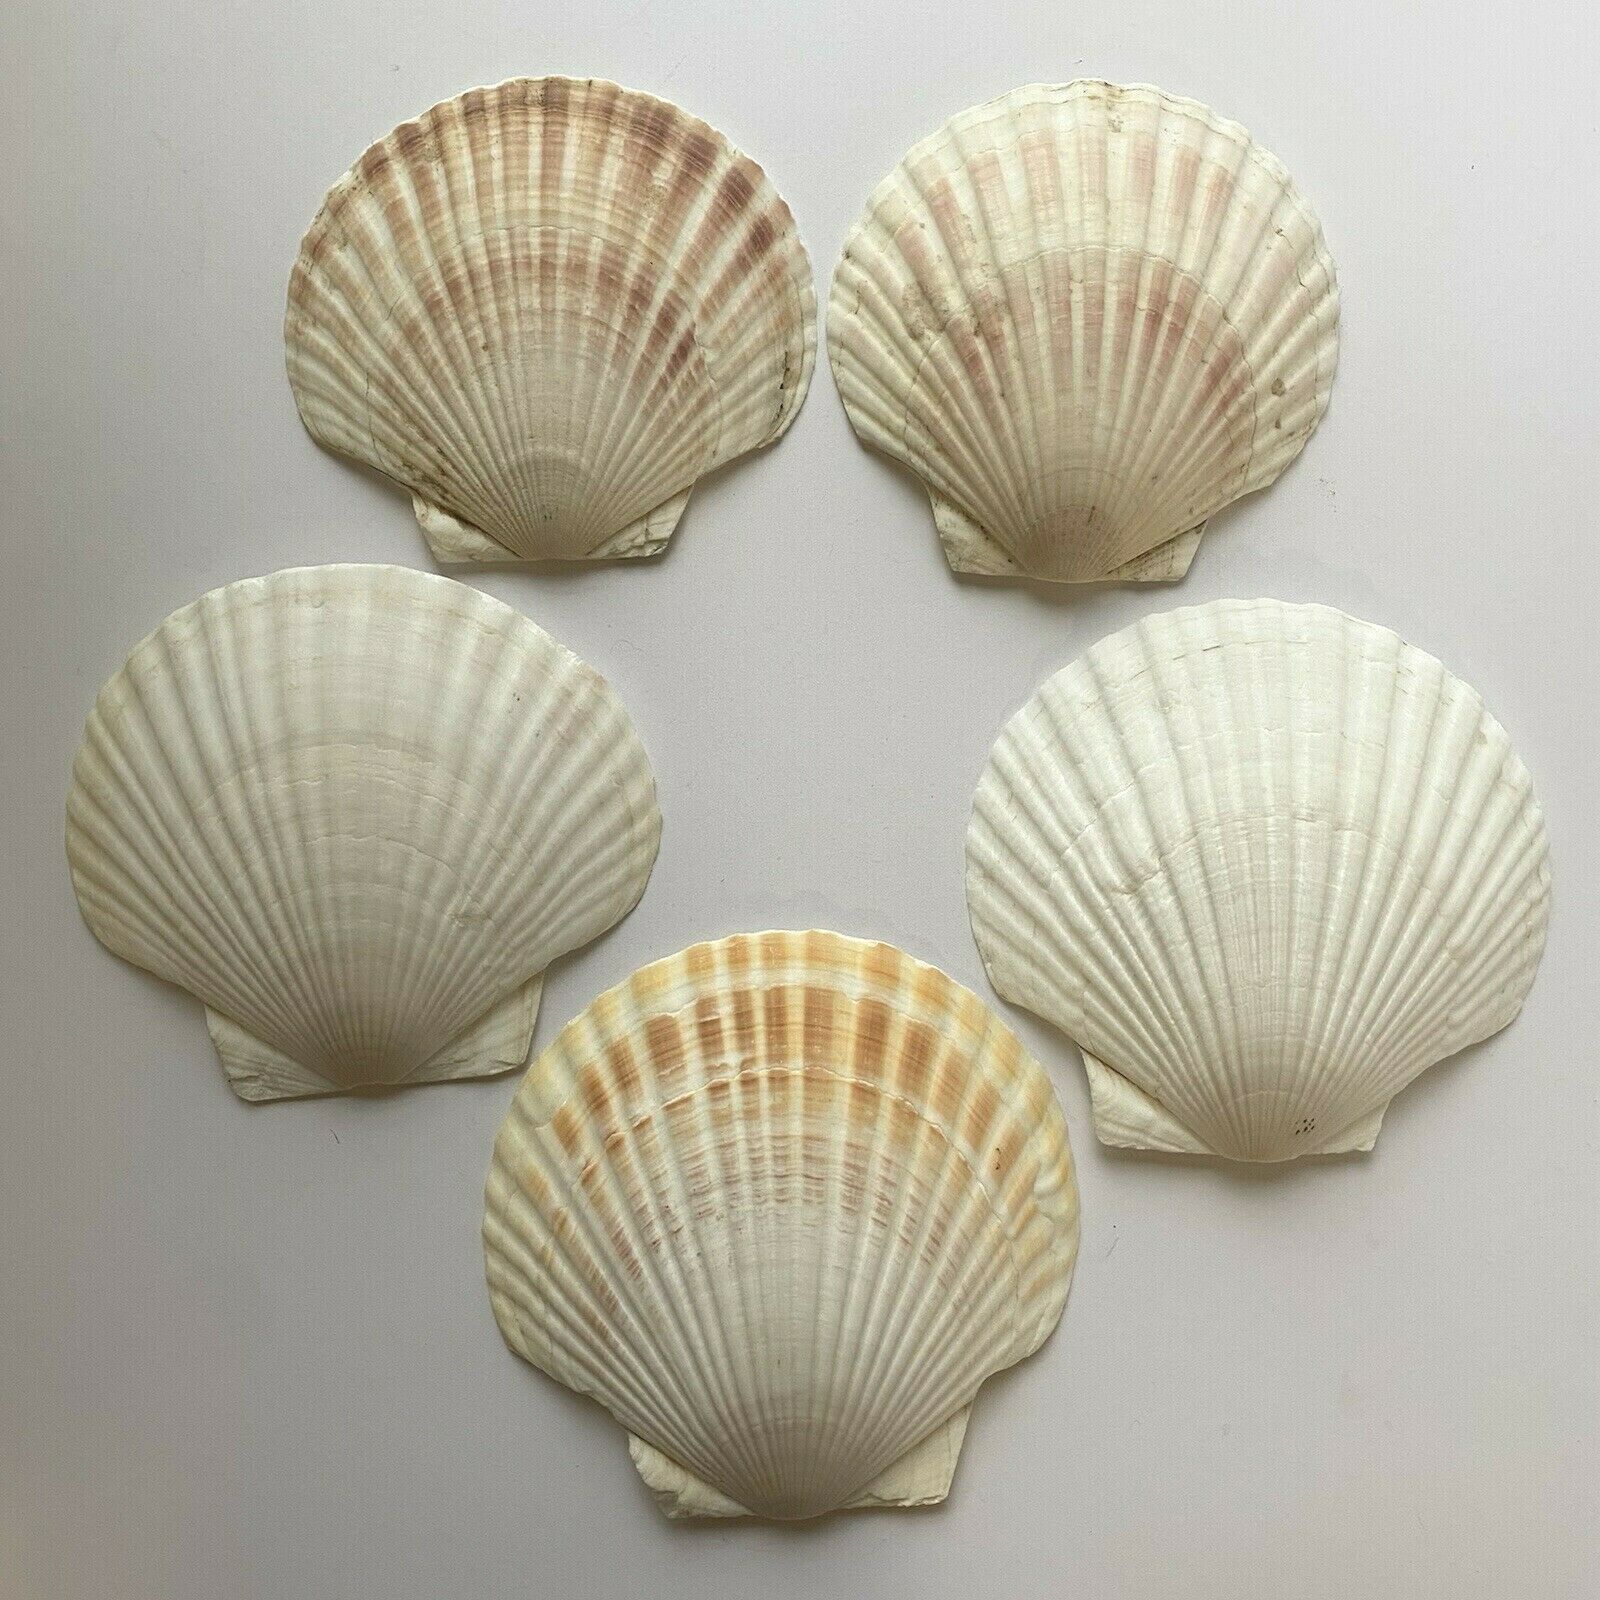 Vintage Japan Baking Shells - Set Of 5 Large 5.5" Scallops -cuisine Crafts Decor